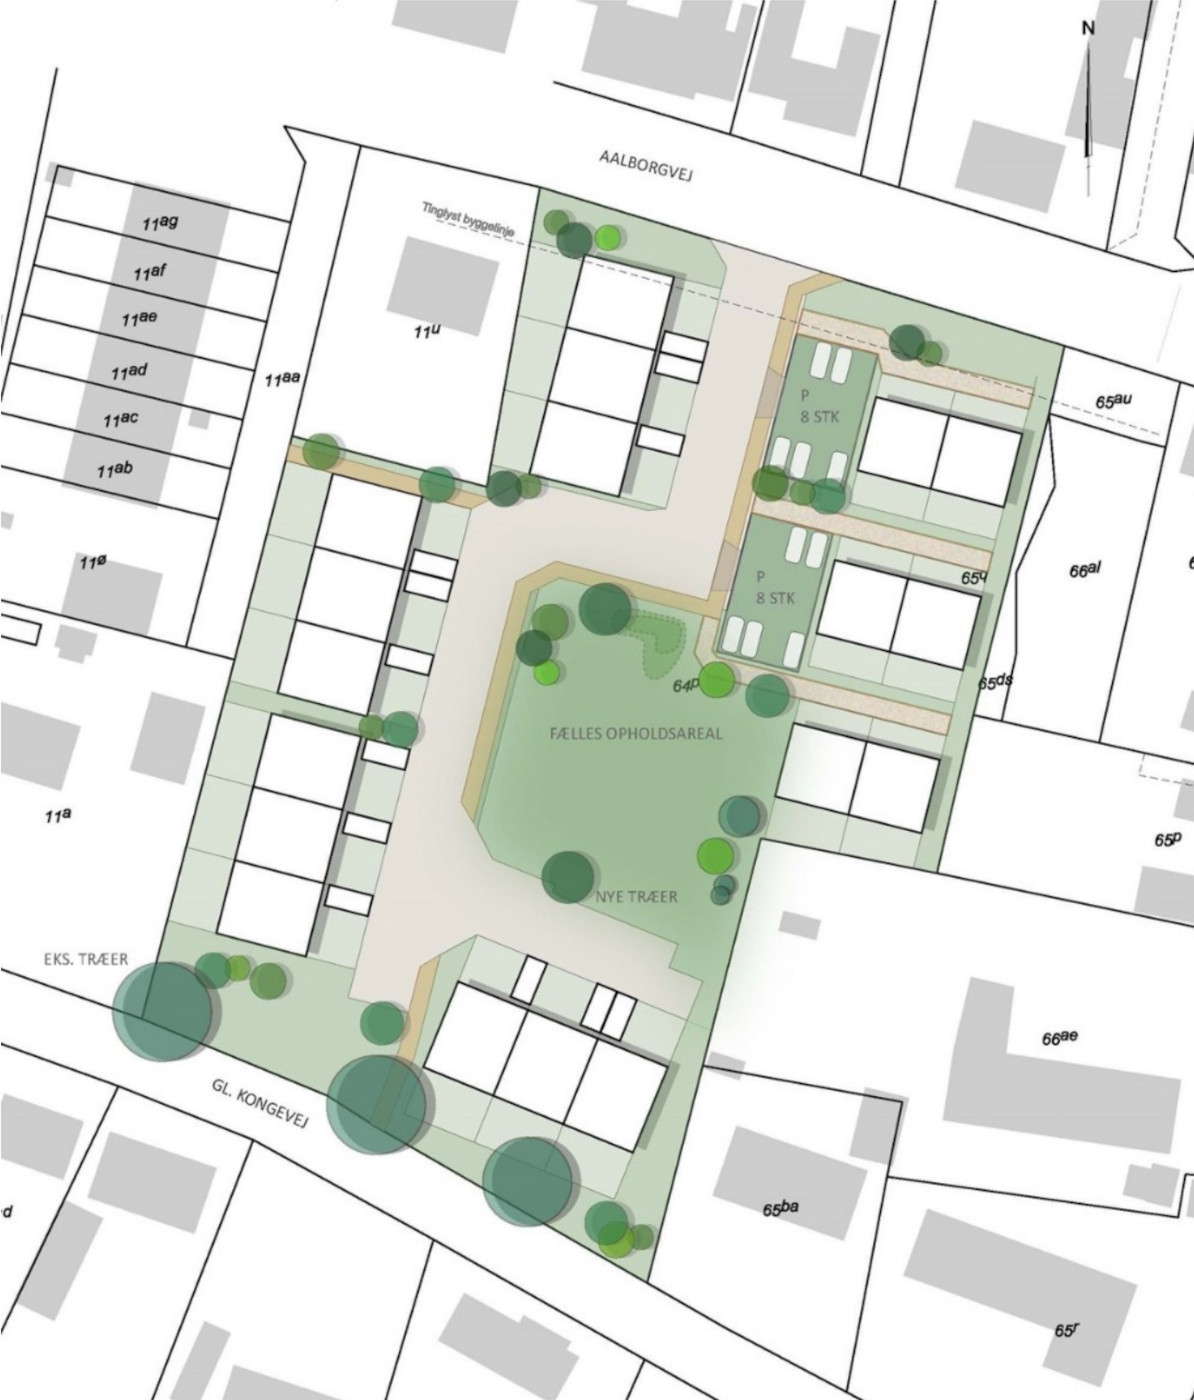 Efter planen skal nye rækkehuse erstatte gammel landbrugsejendom mellem Aalborgvej og Gl. Kongevej i Gandrup. Illustration fra lokalplanforslaget.